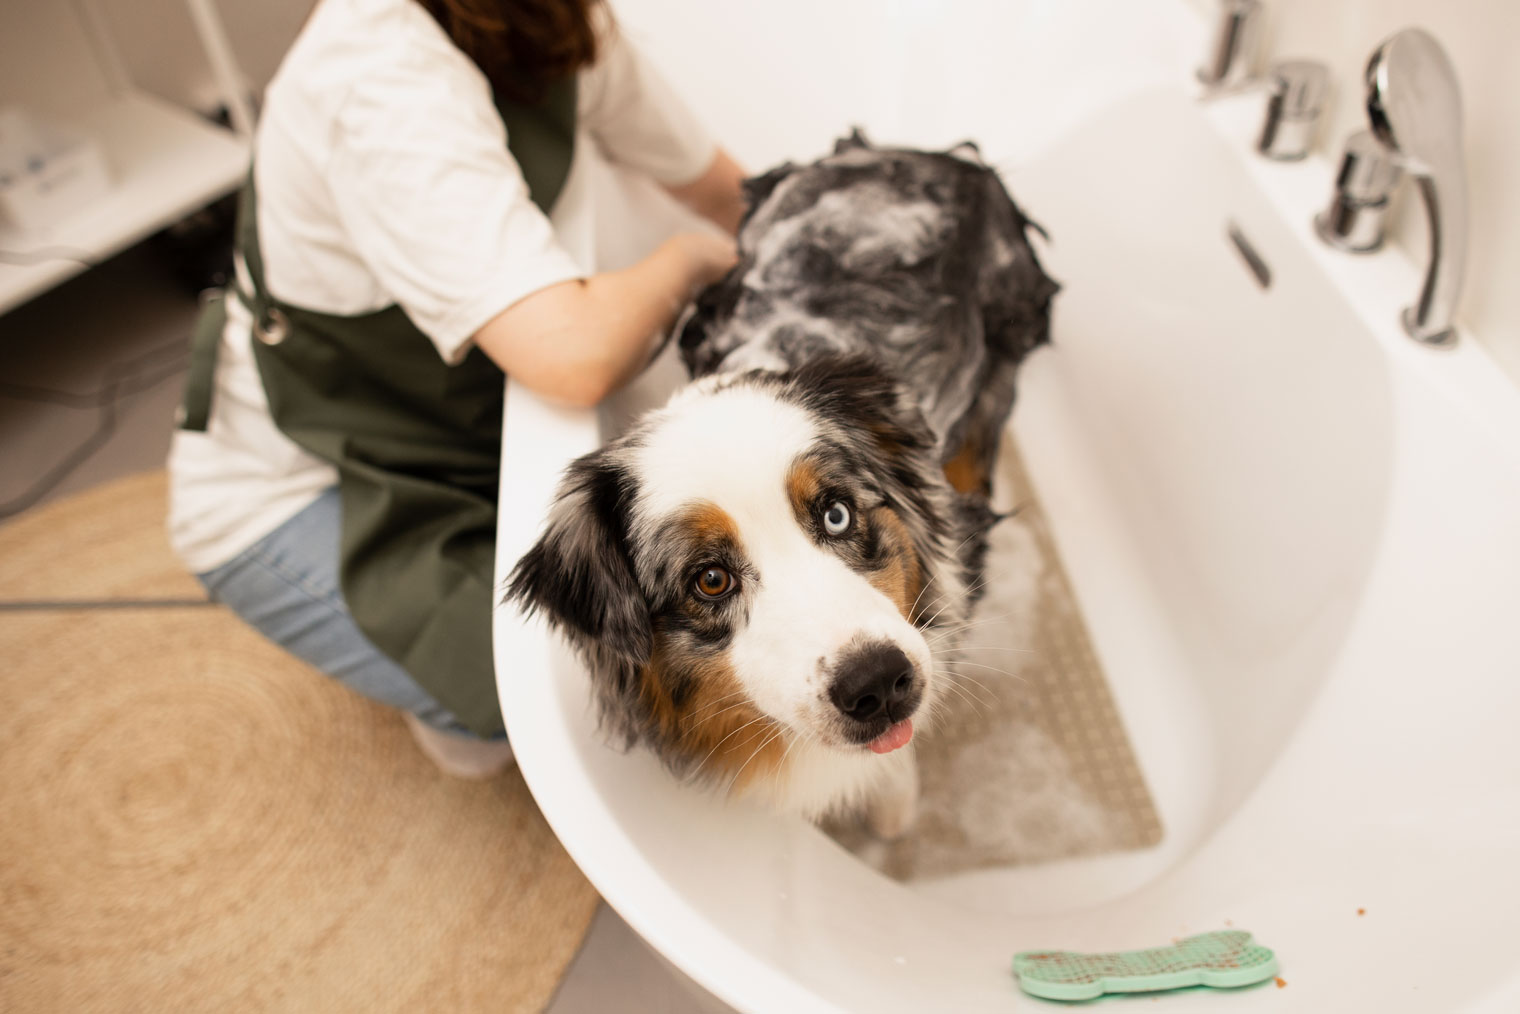 Дома в ванной можно использовать противоскользящий коврик на дно и лизательный коврик на липучке с паштетом, который поможет собаке отвлечься. Фотография: Наталья Коротаева